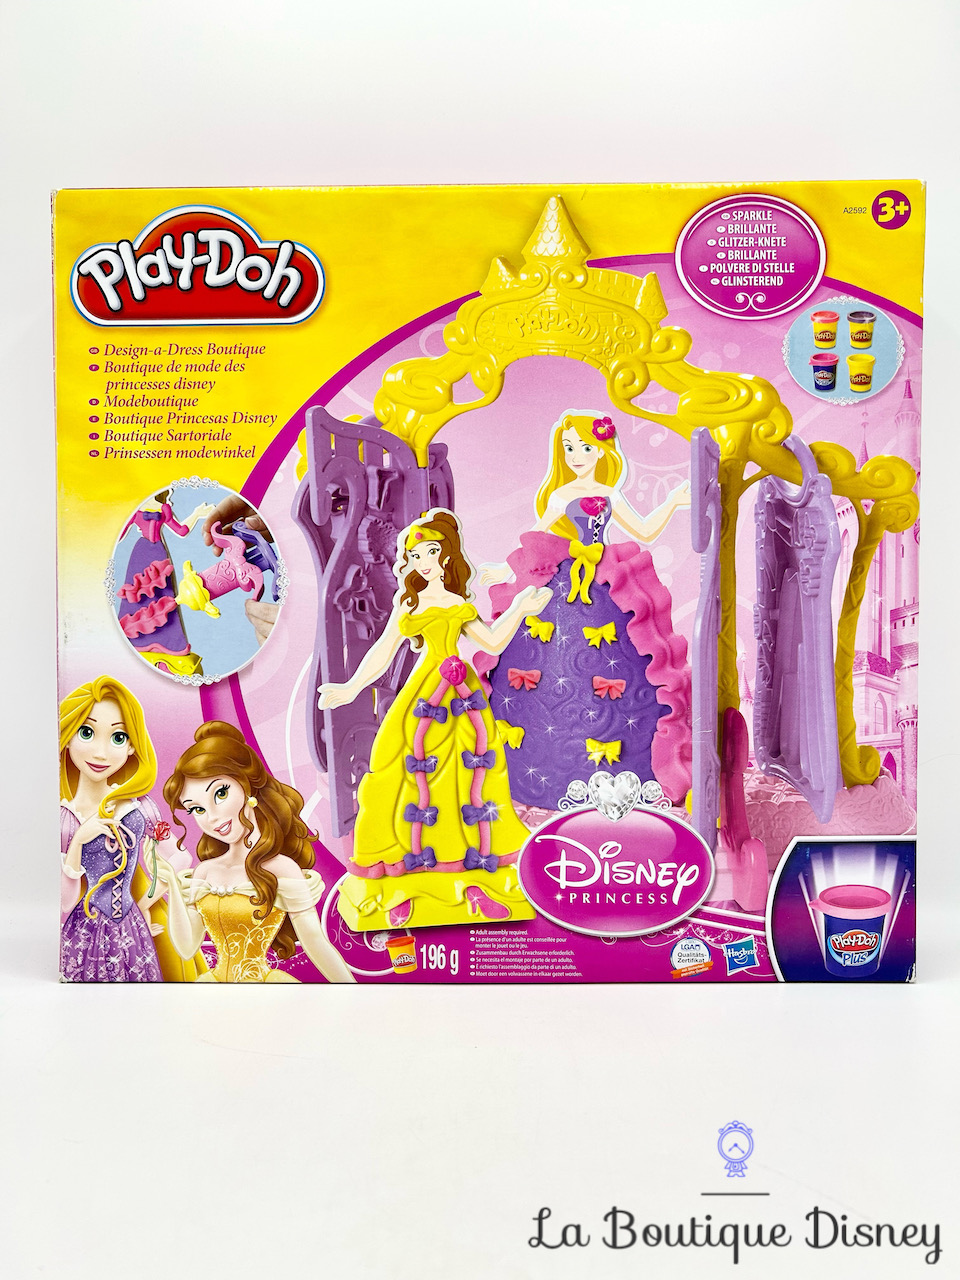 jouet-pate-a-modeler-boutique-de-mode-des-princesses-disney-play-doh-disney-princess-raiponce-belle-1